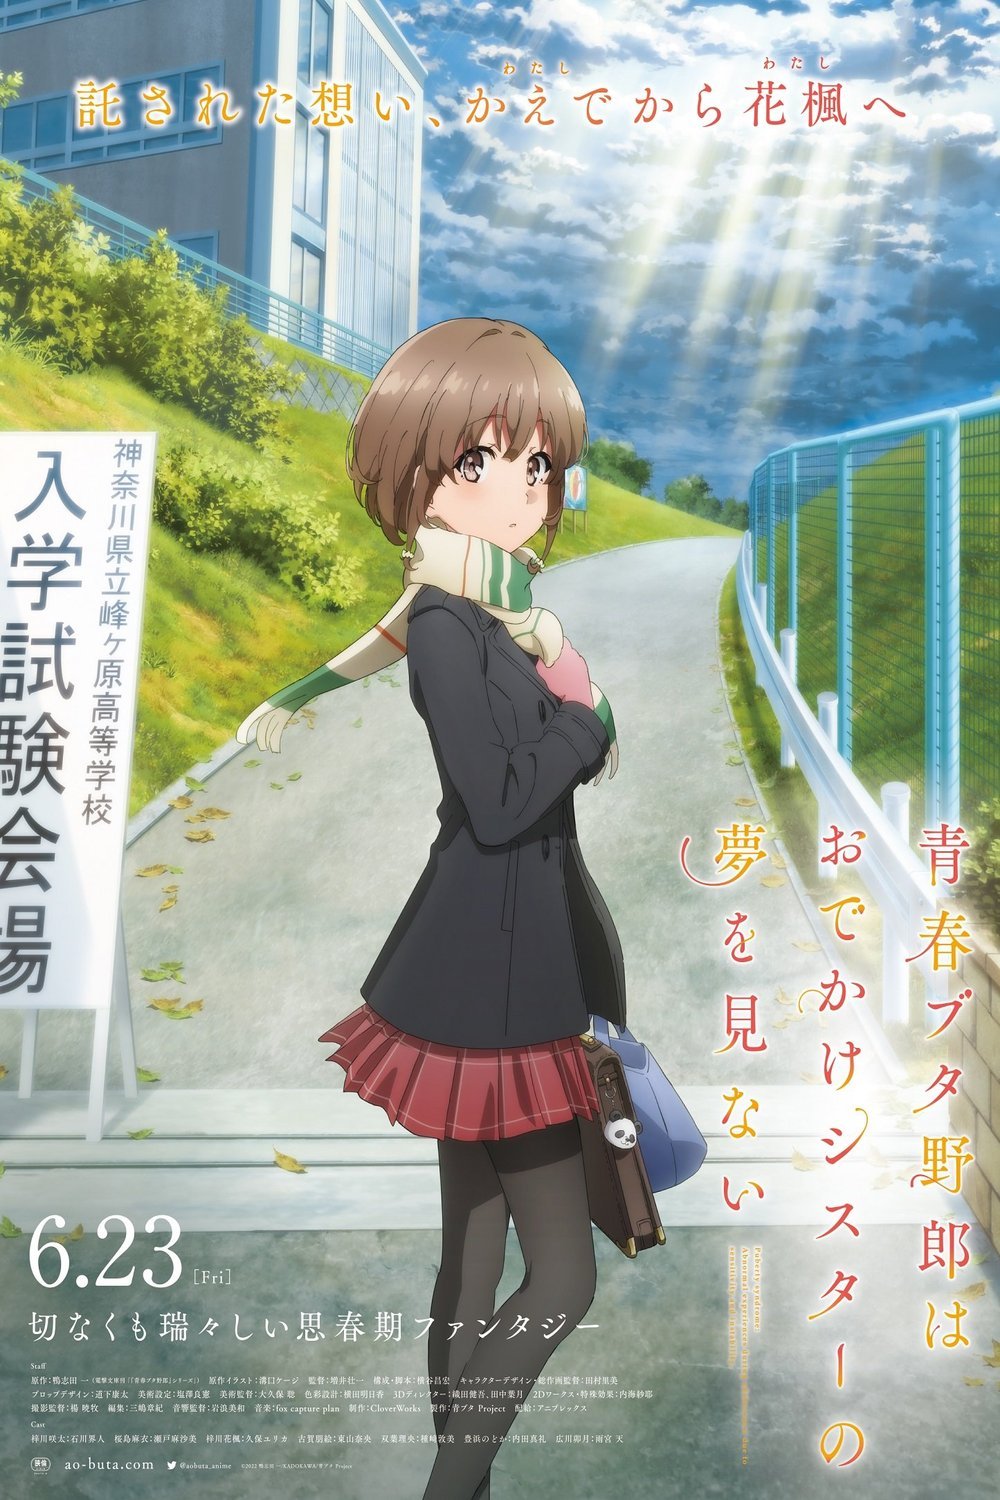 Poster of the movie Seishun buta yaro ha Odekake sisuta no yume wo minai